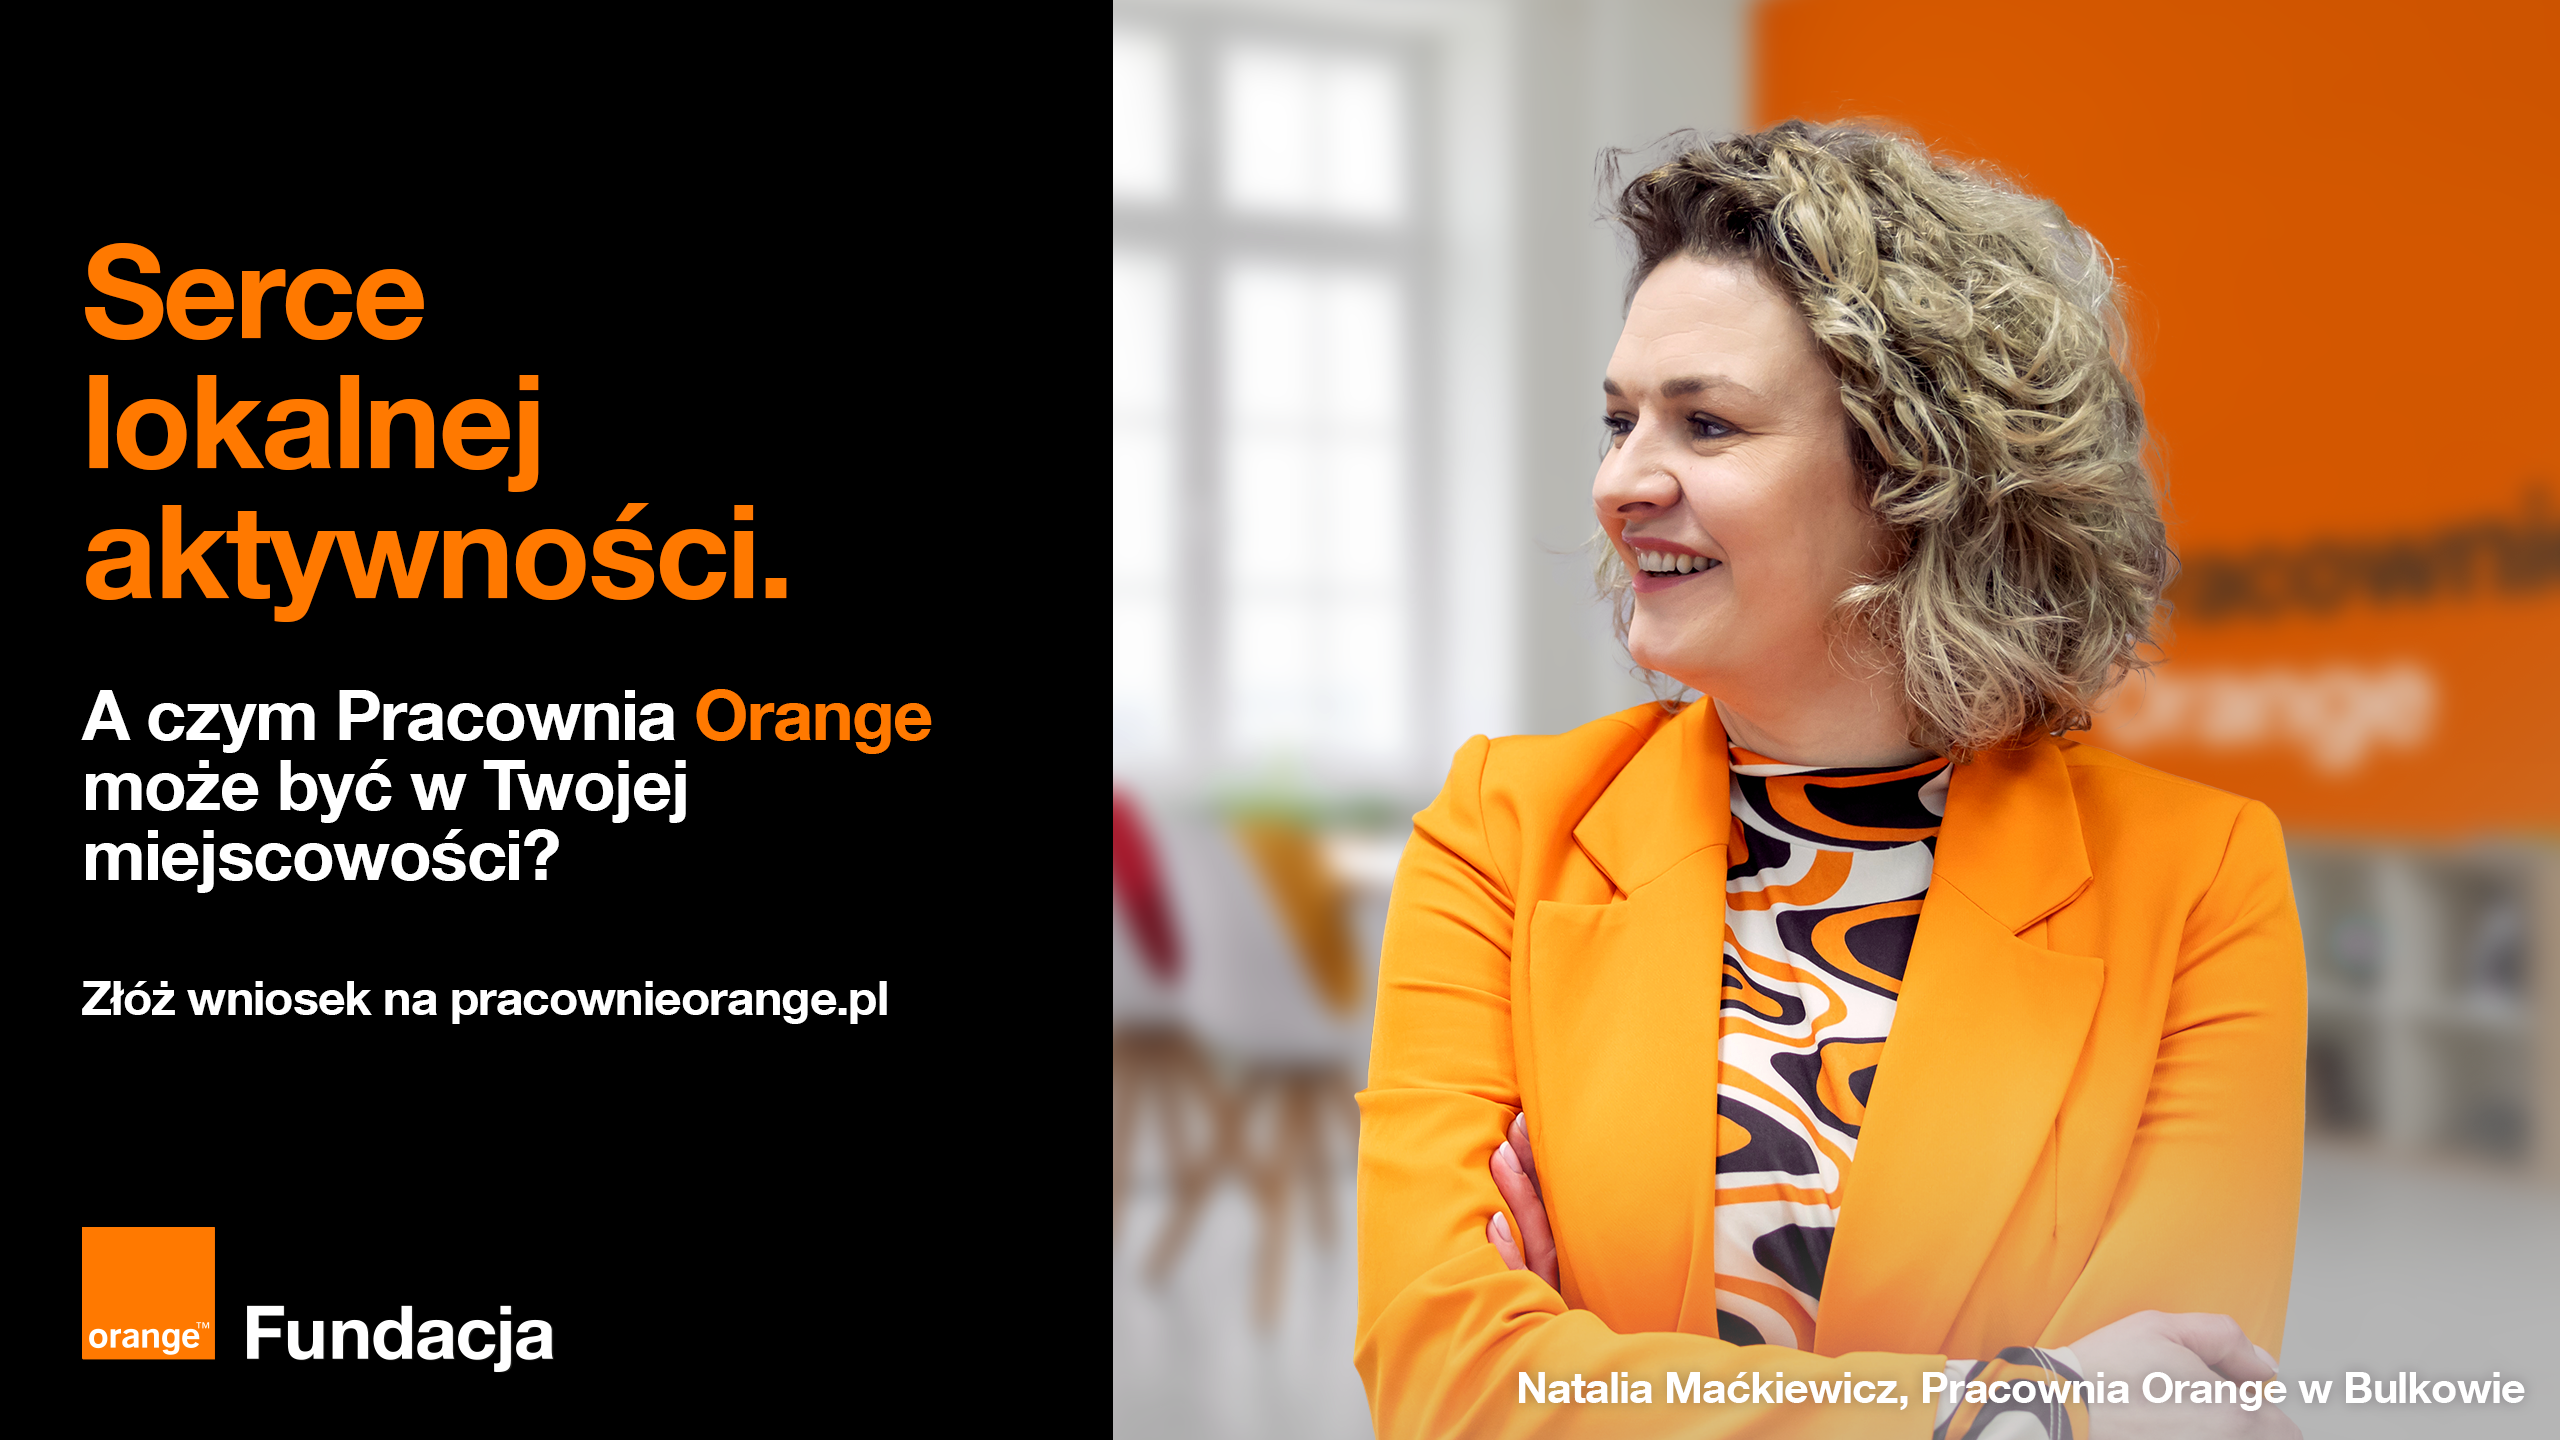 Serce lokalnej aktywności - foto Zdjęcie liderki w pomarańczowym ubraniu